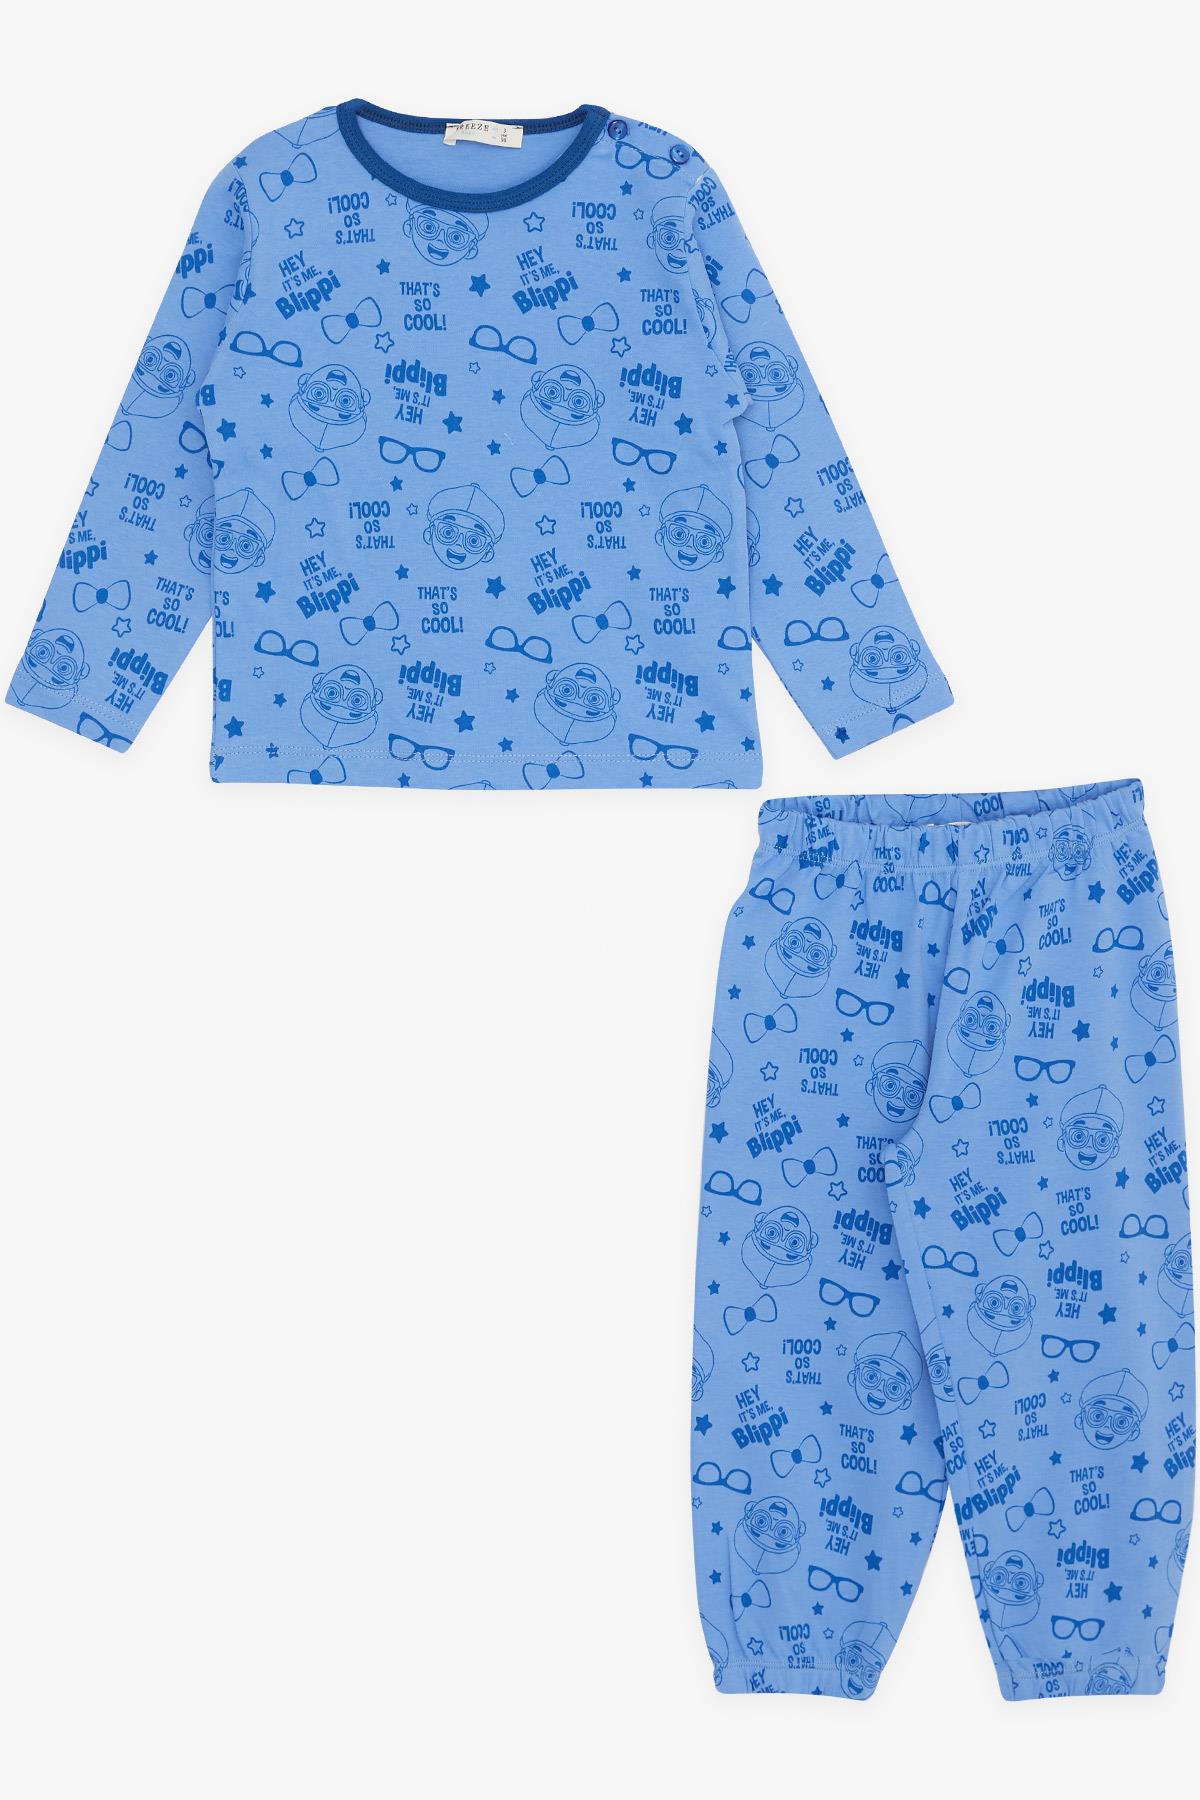 Erkek Bebek Pijama Takımı Havalı Çocuk Desenli Mavi 9 Ay-3 Yaş - Yumuşak  Kumaşlı Çocuk Pijamaları | Breeze